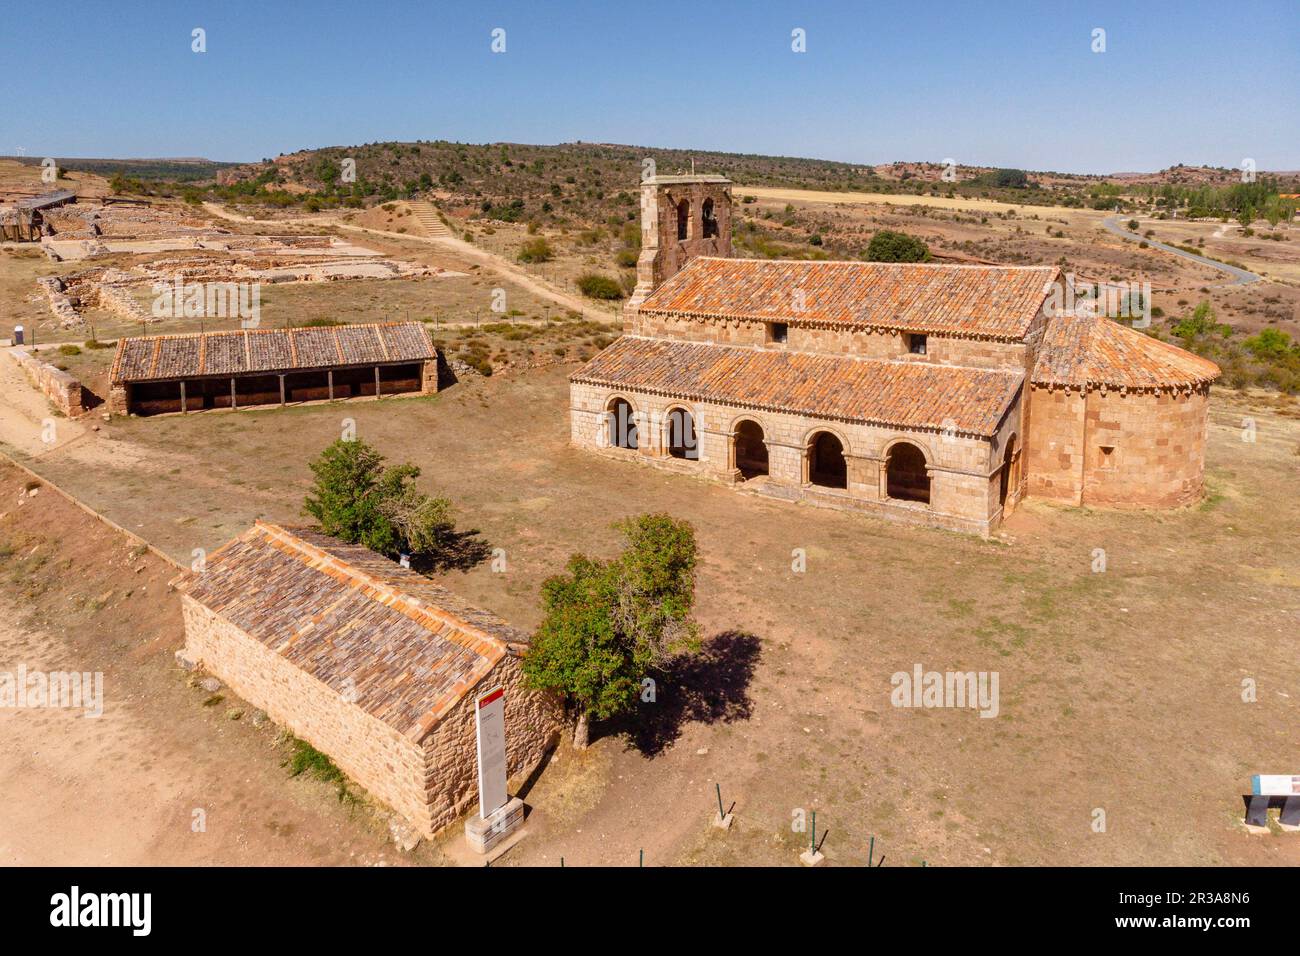 Tiermes, Yacimiento arqueológico de Tiermes, Soria, comunidad autónoma de Castilla y León, Spain, Europe. Stock Photo